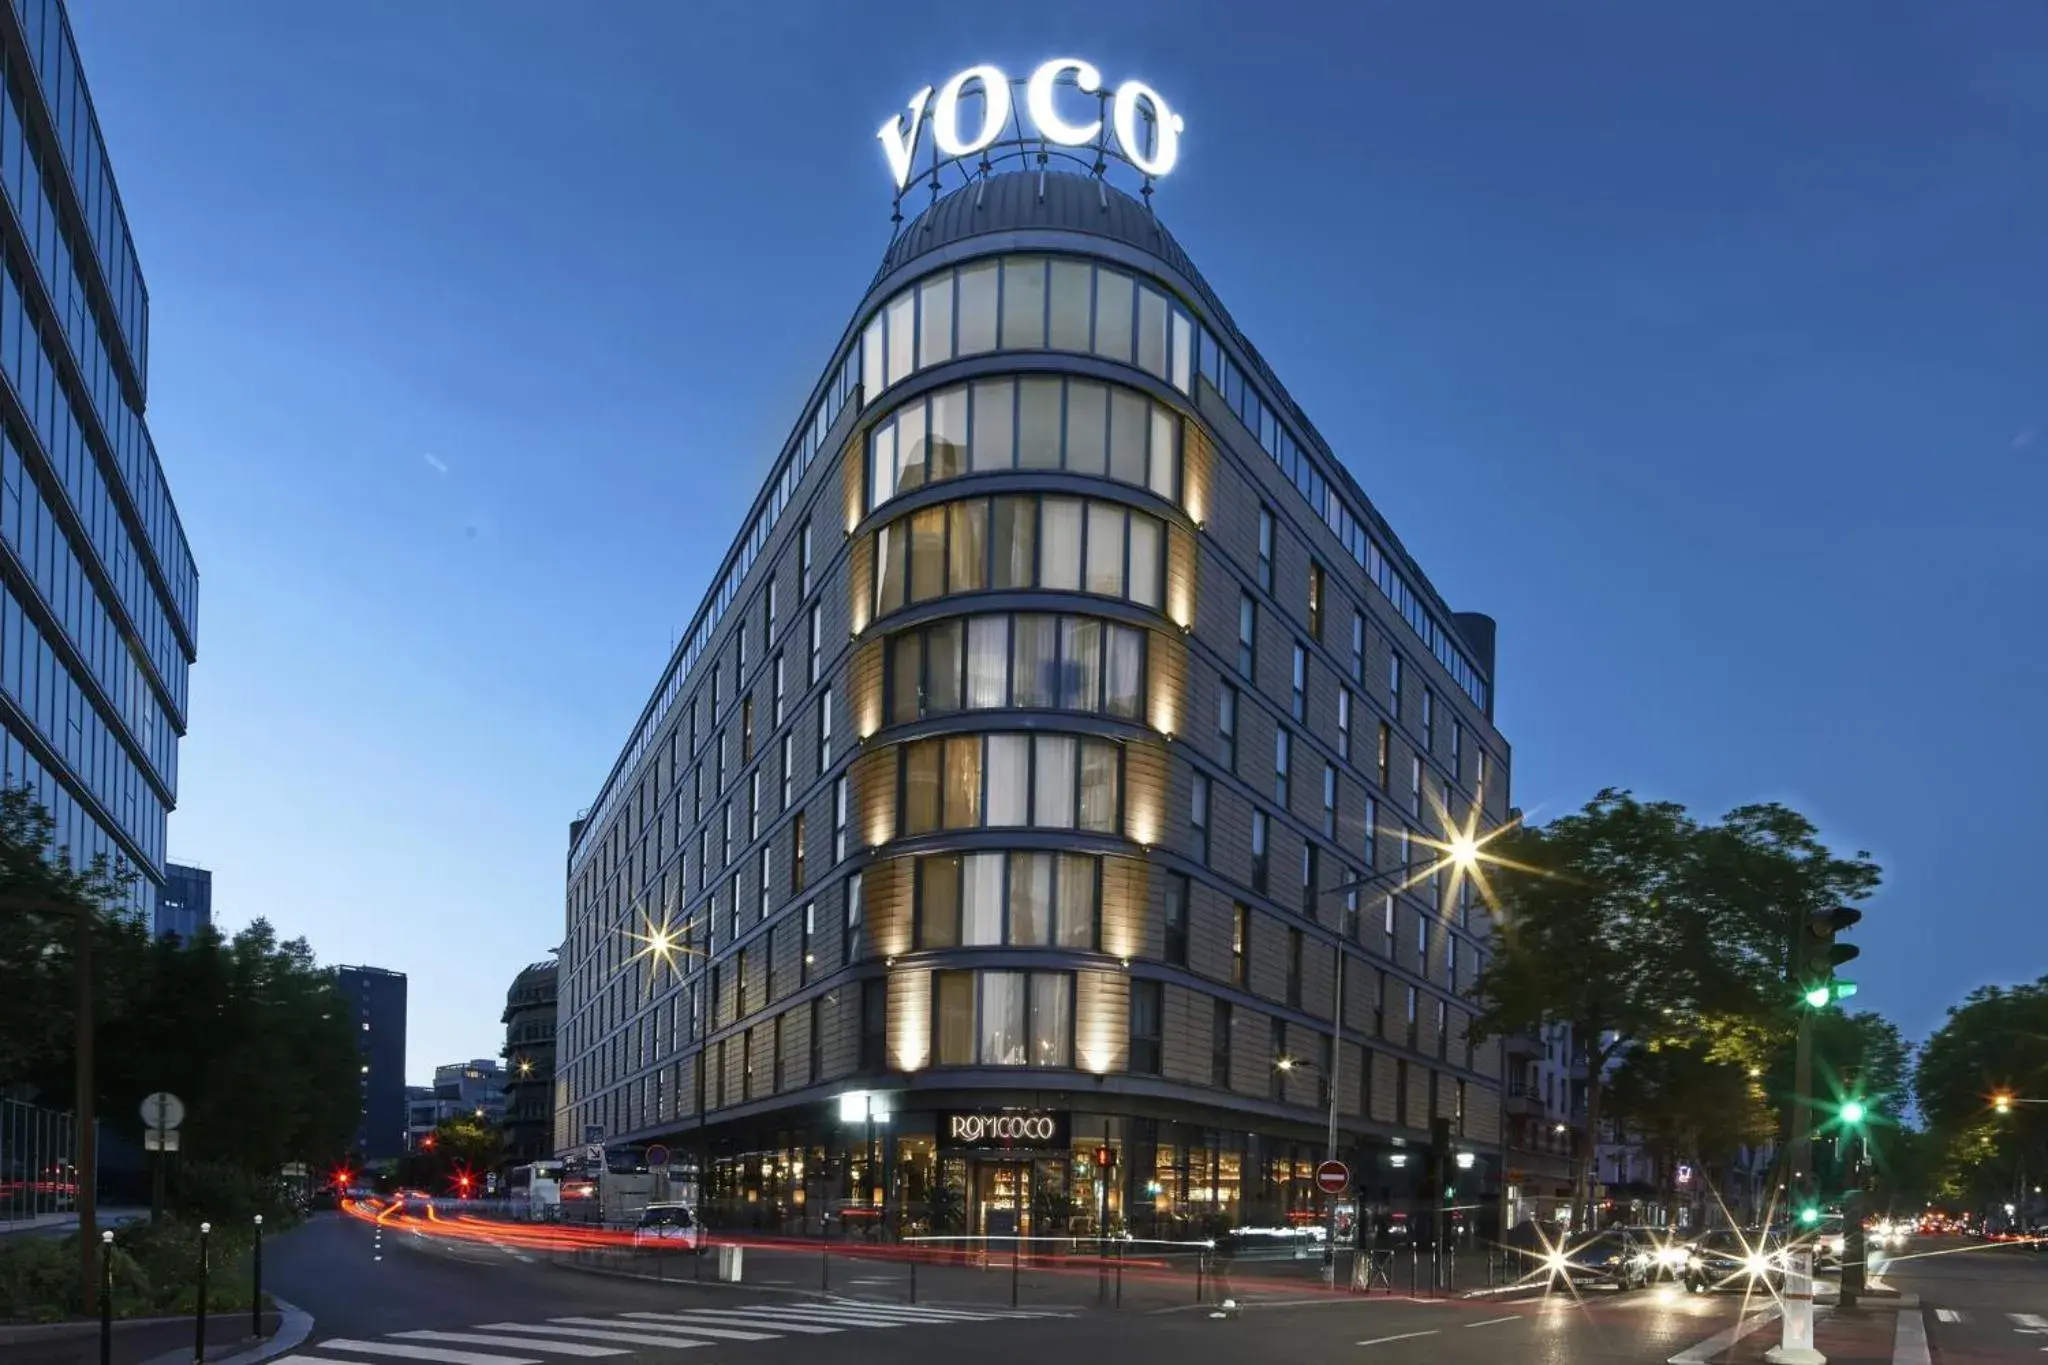 Property Building in voco Paris - Porte de Clichy, an IHG Hotel